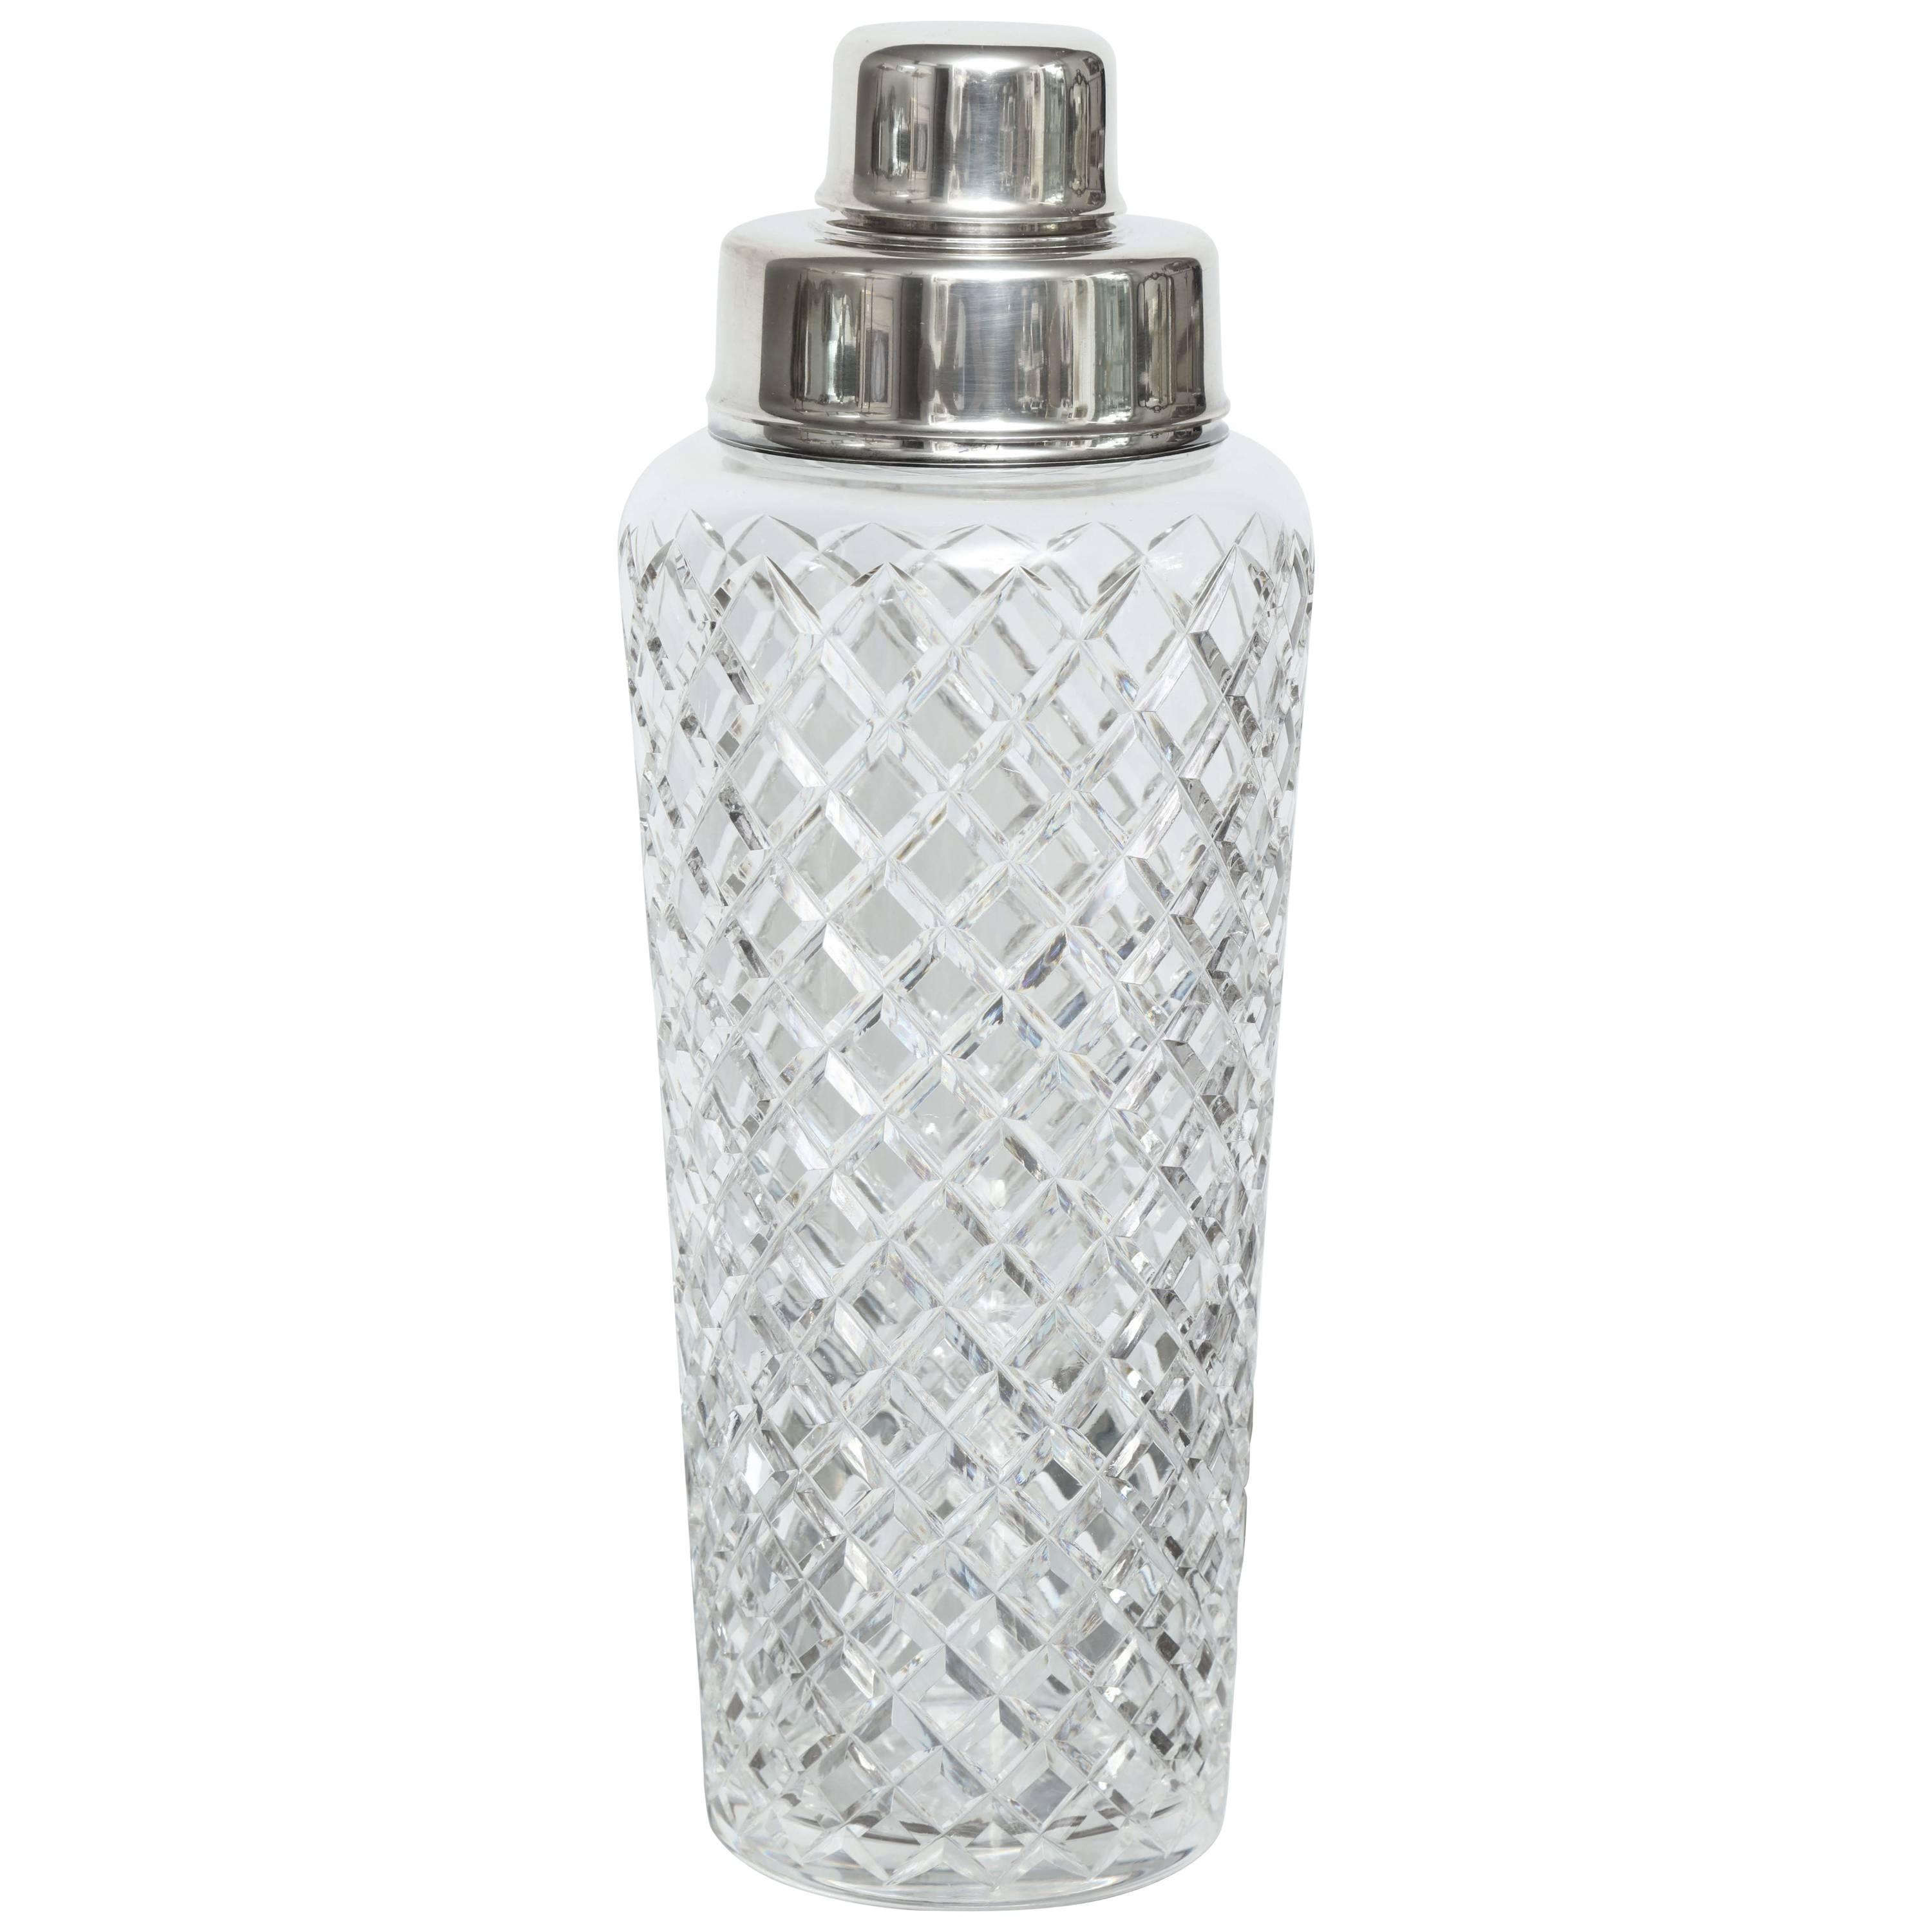 Tiffany und Co Sterling Silber und Kristall Cocktail Shaker